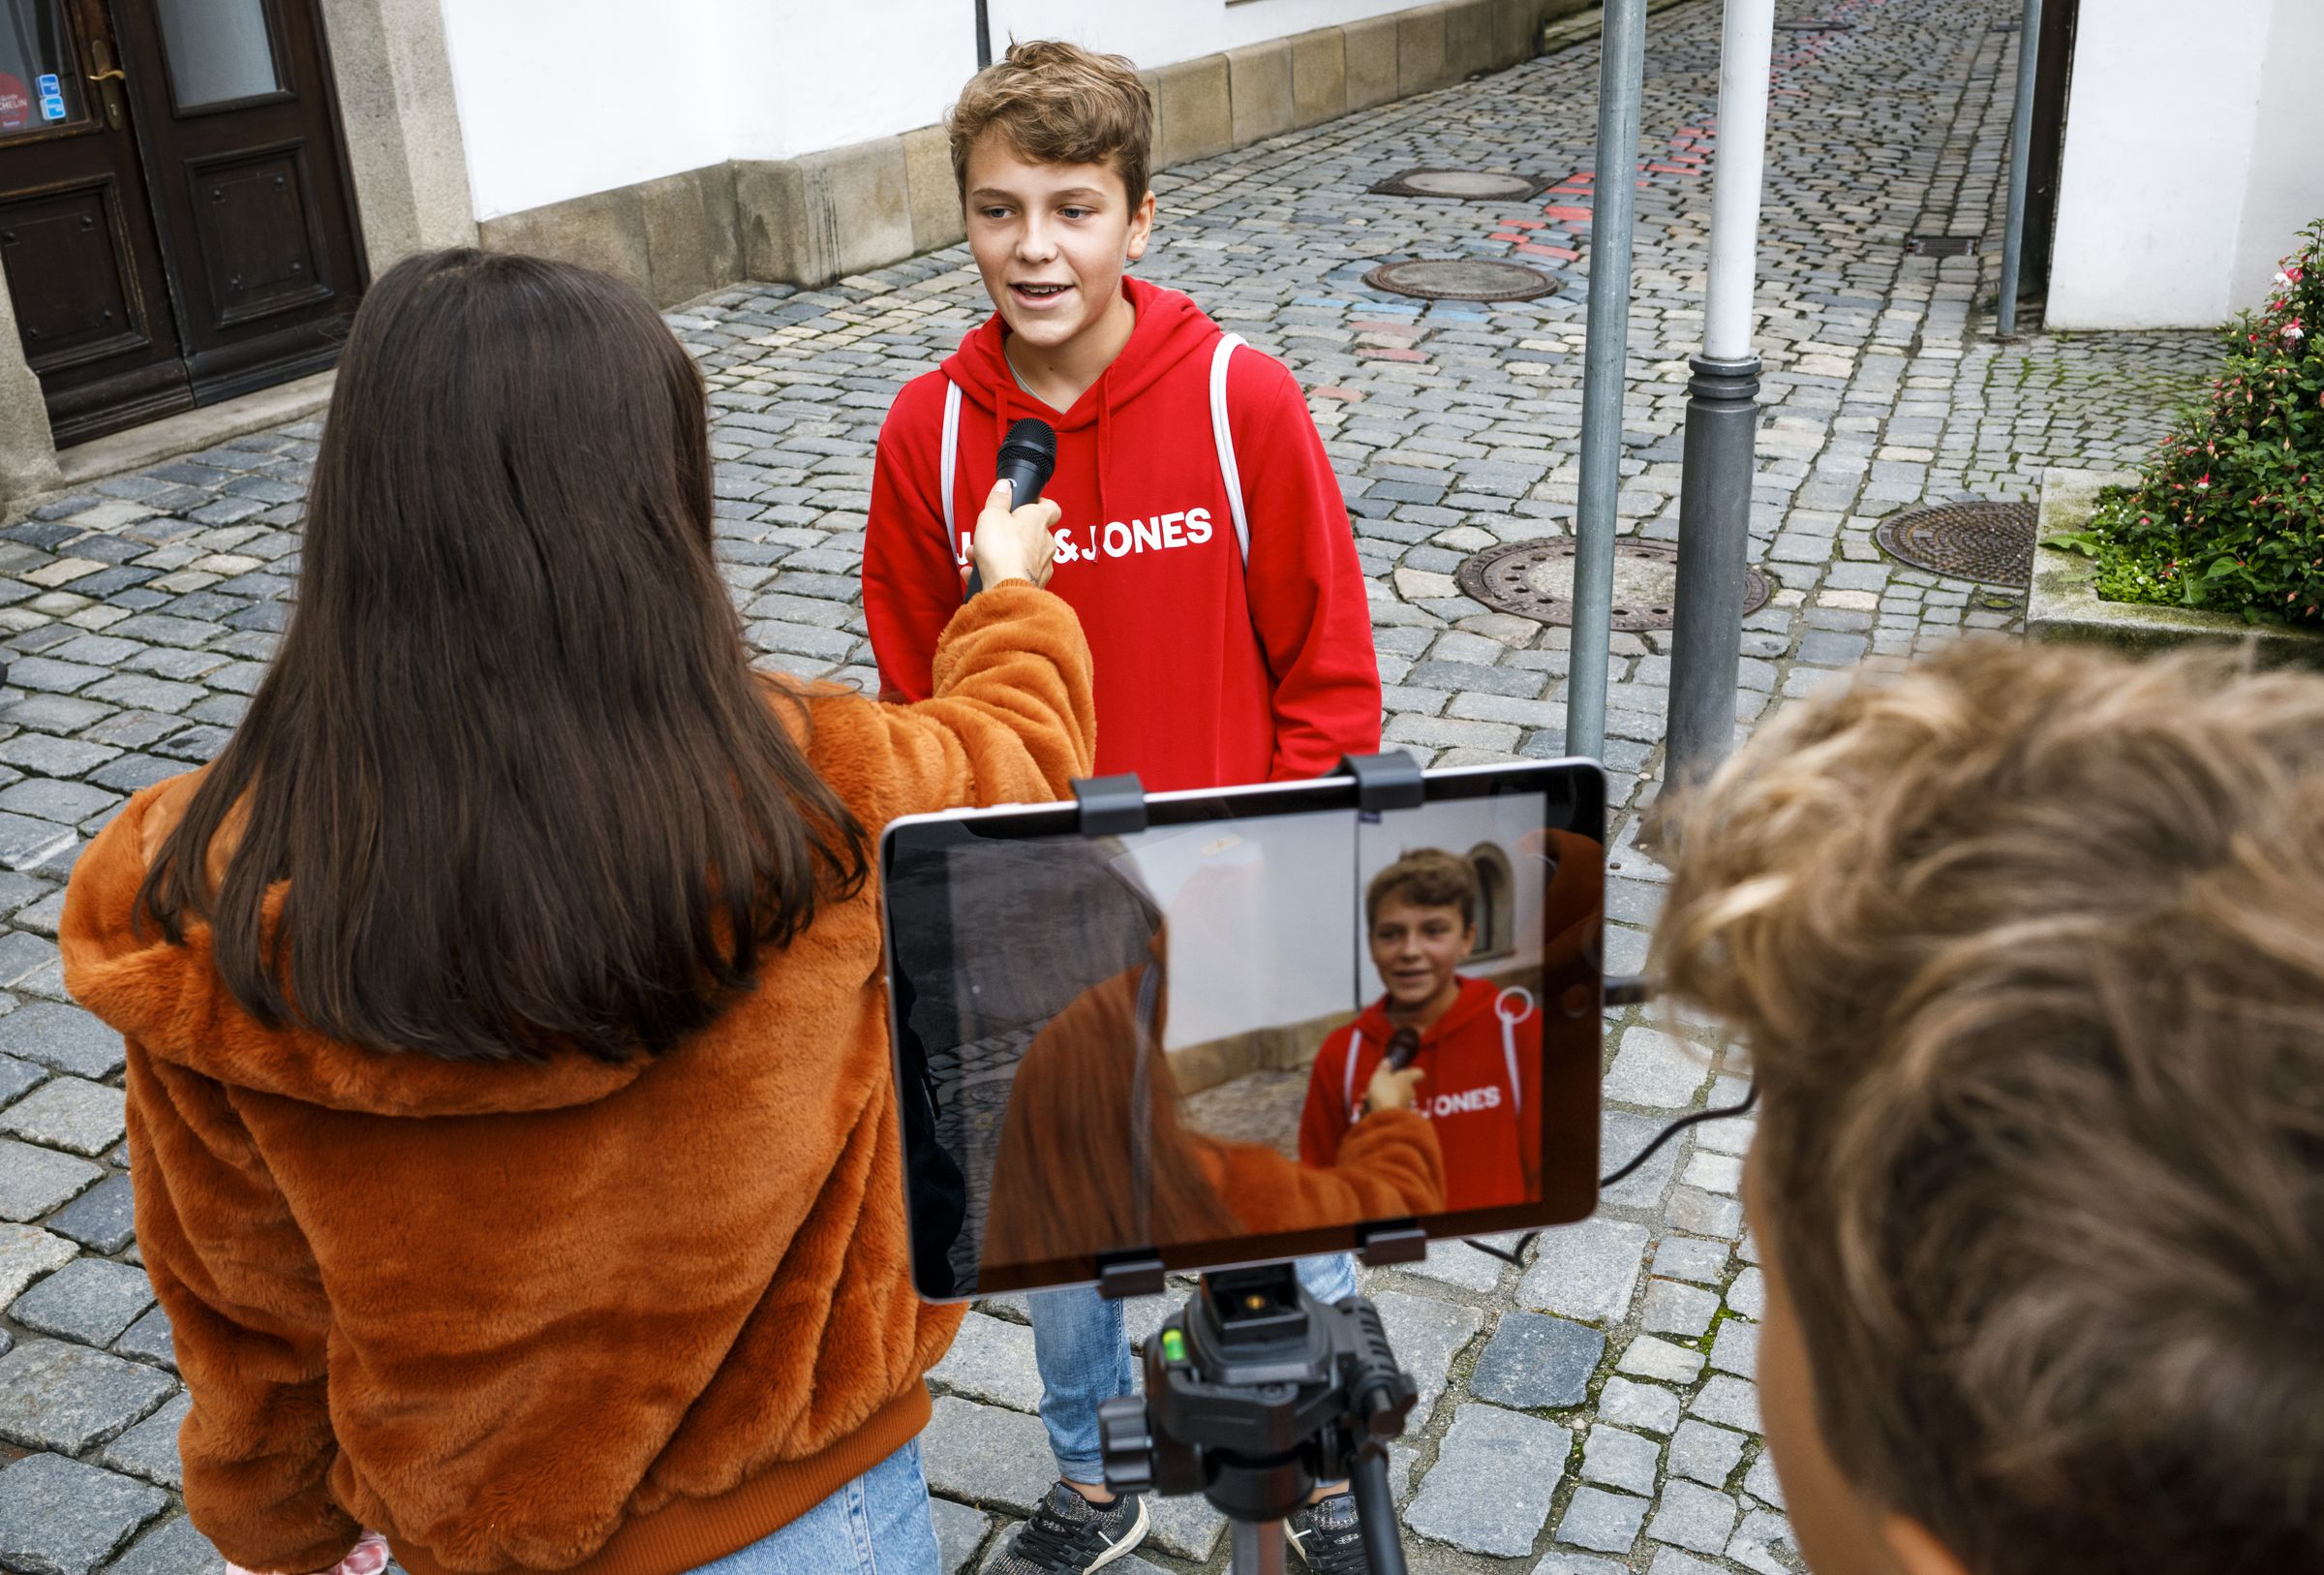 Zwei Schüler machen ein Interview. Im Vordergrund sieht man ein Tablet auf einem Stativ, das als Kamera dient.